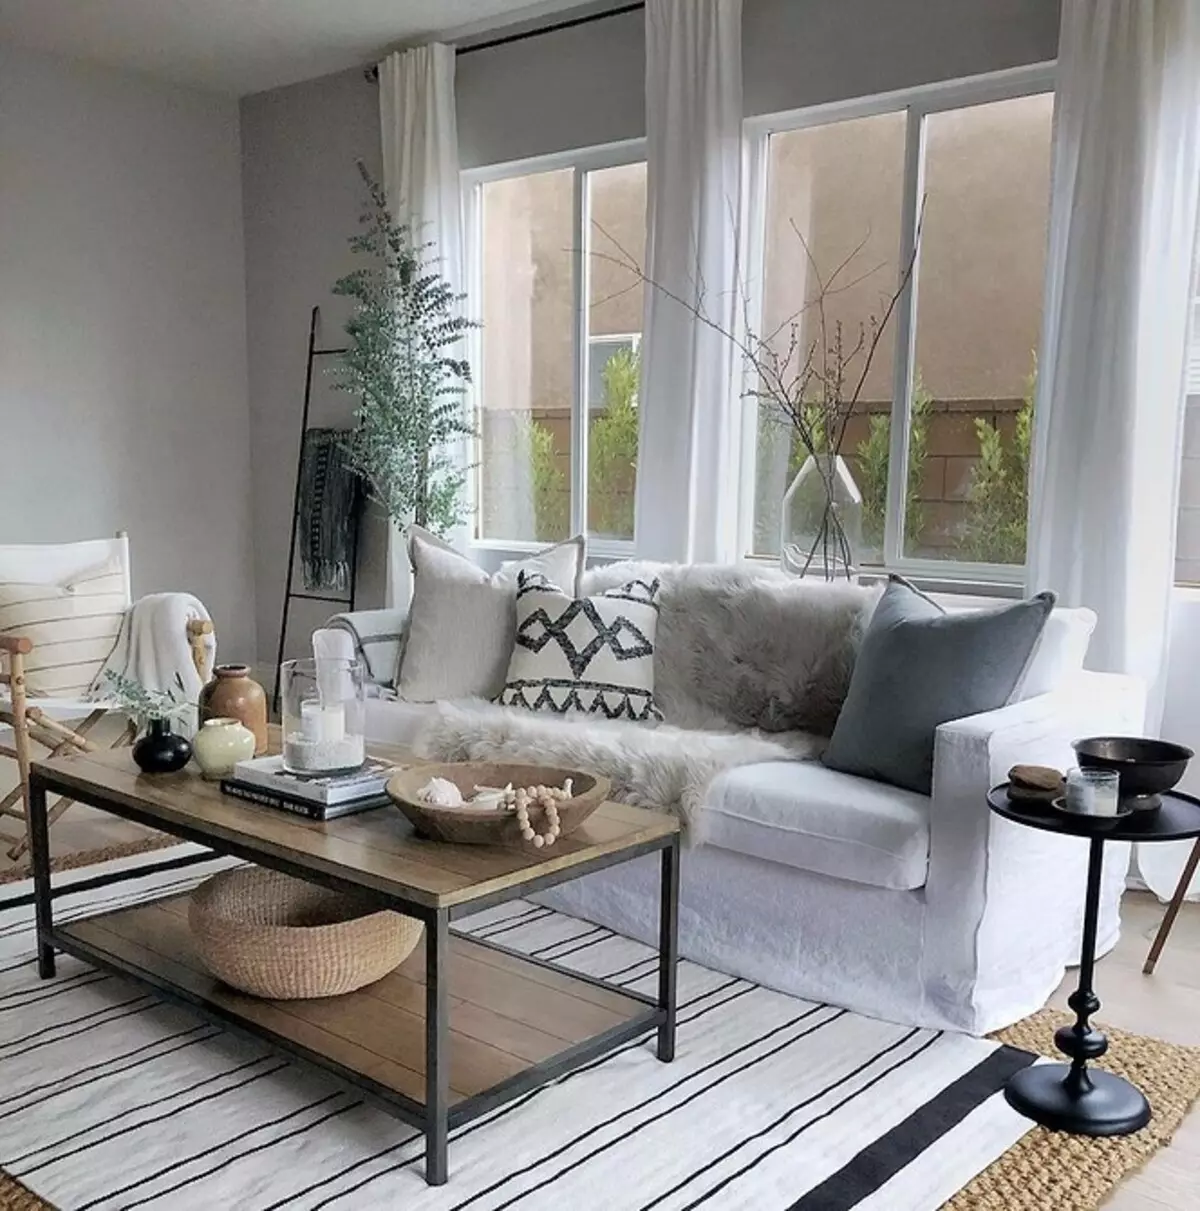 Διαμέρισμα σε Σκανδιναβικό Στυλ: 70 Εμπνευσμένα Παραδείγματα Σχεδιασμού 9227_35